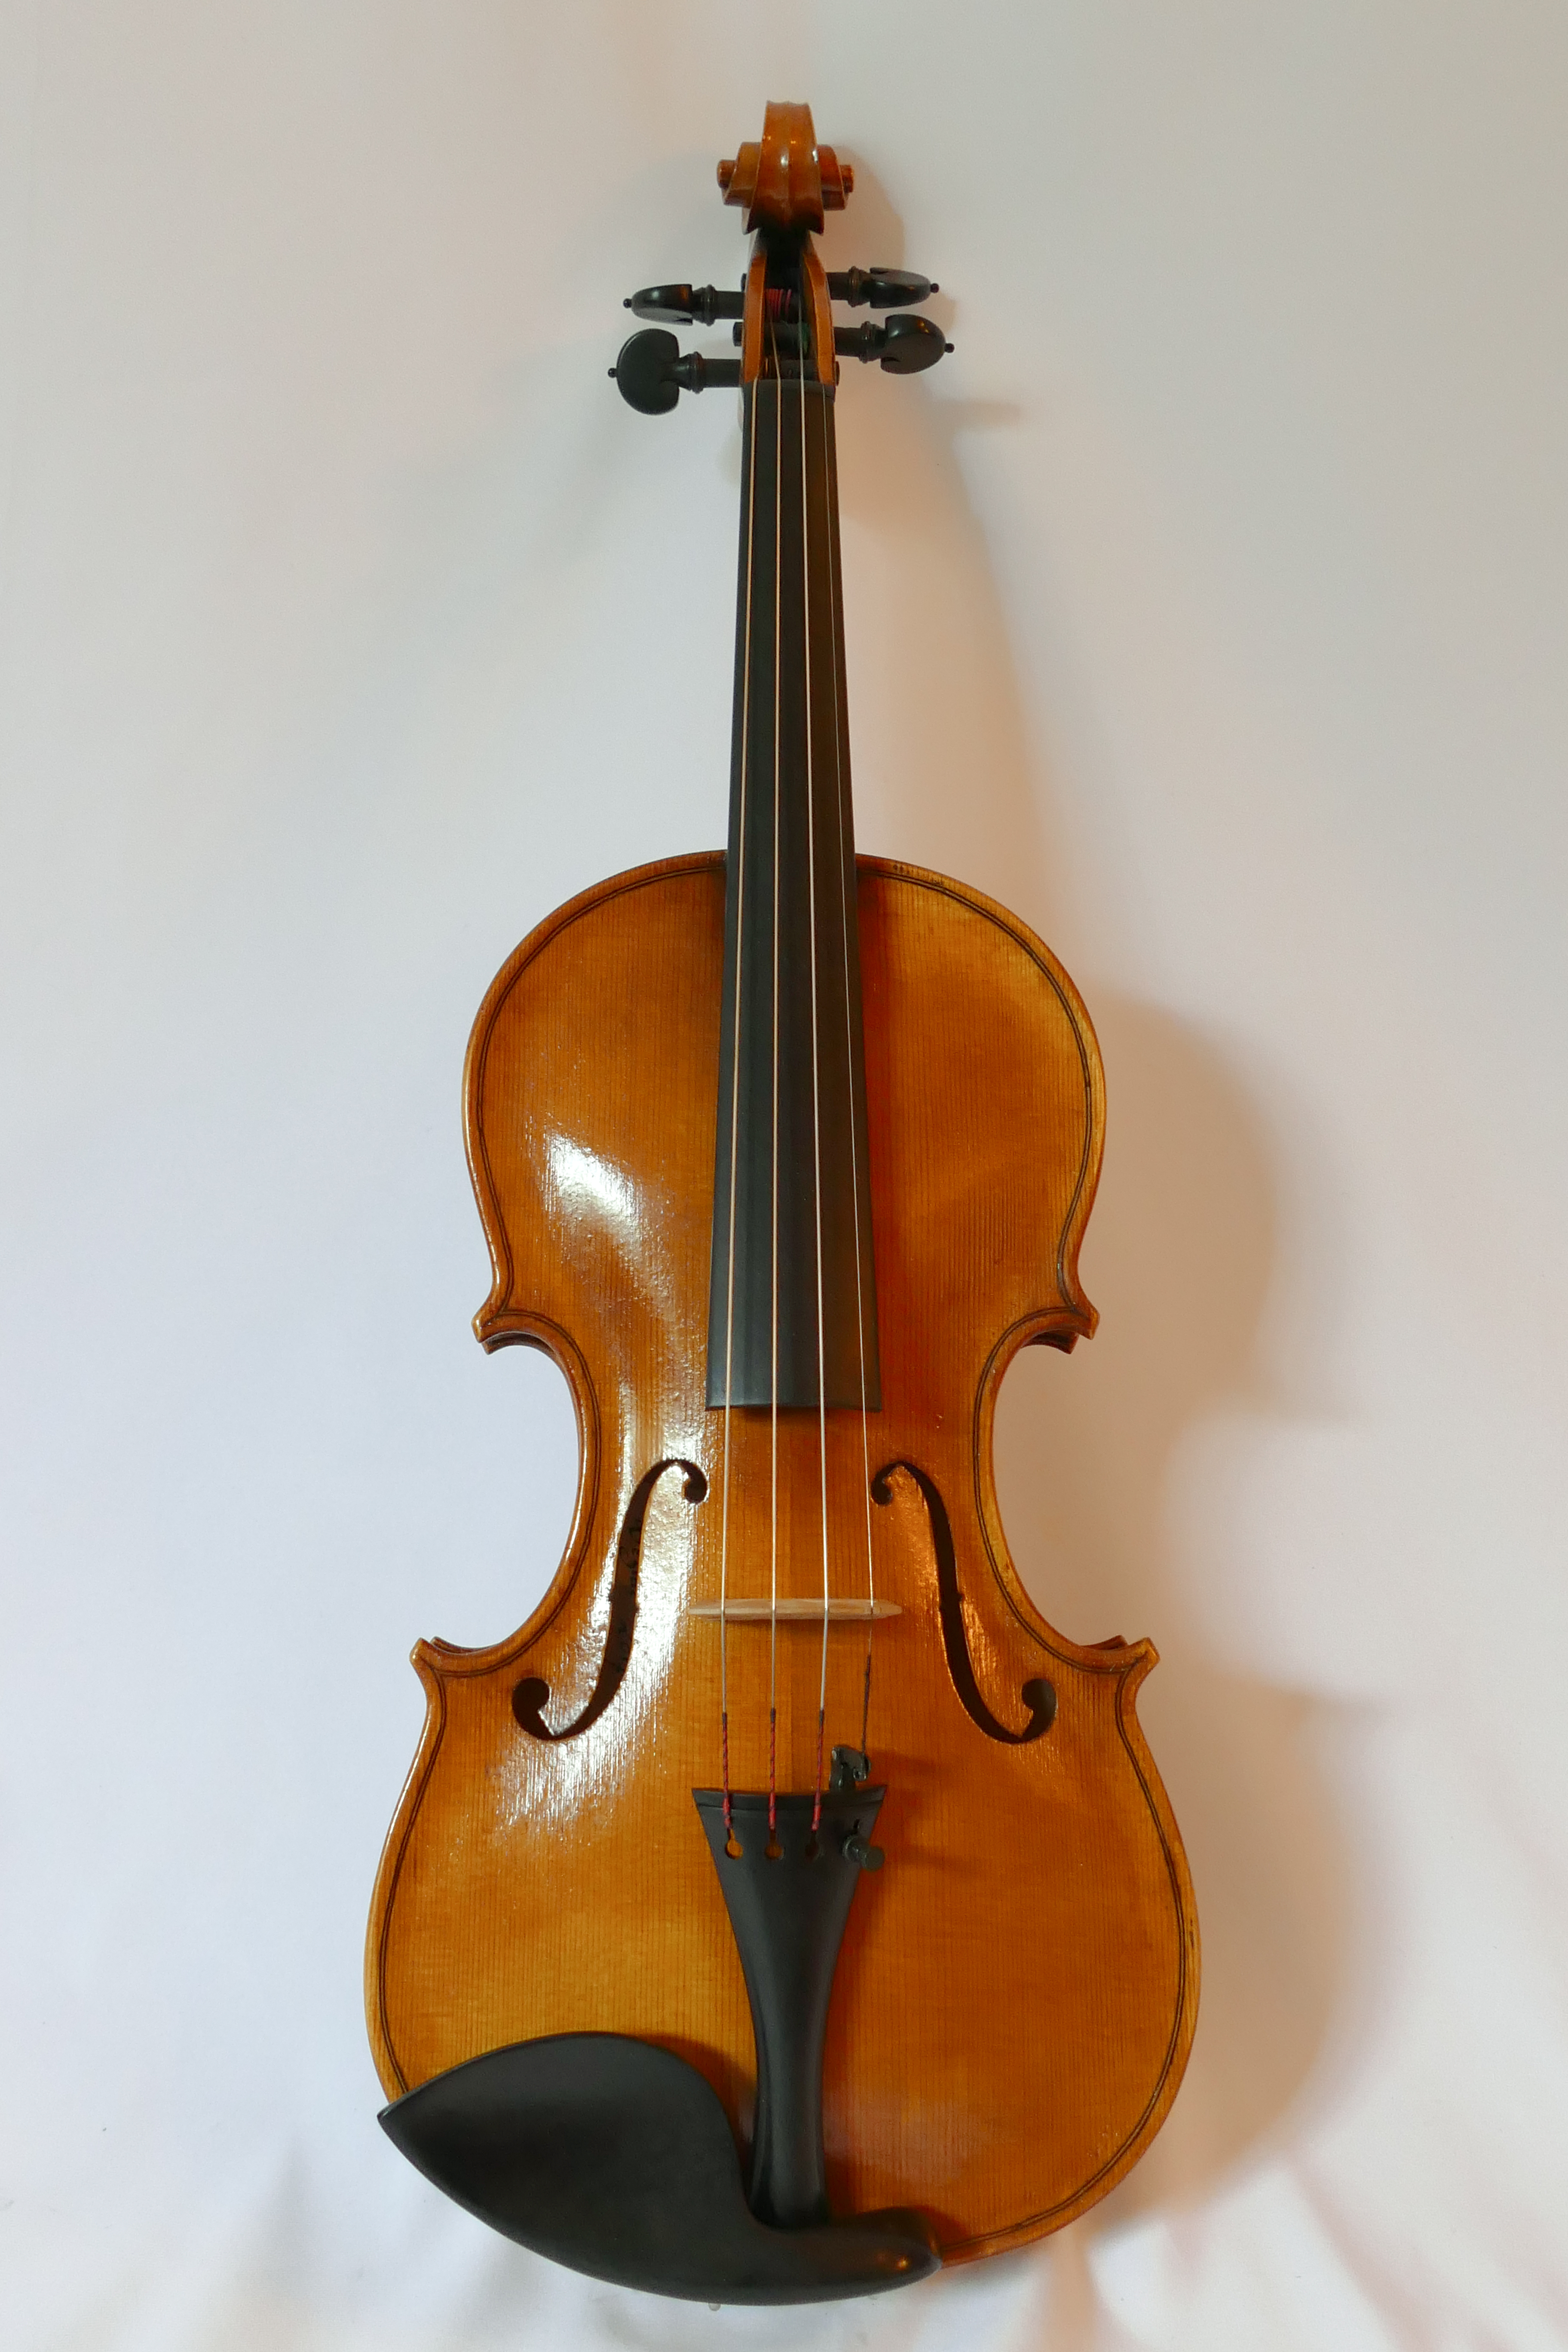 Violon d’après A.Stradivari “Messiah” 1716 – 2017